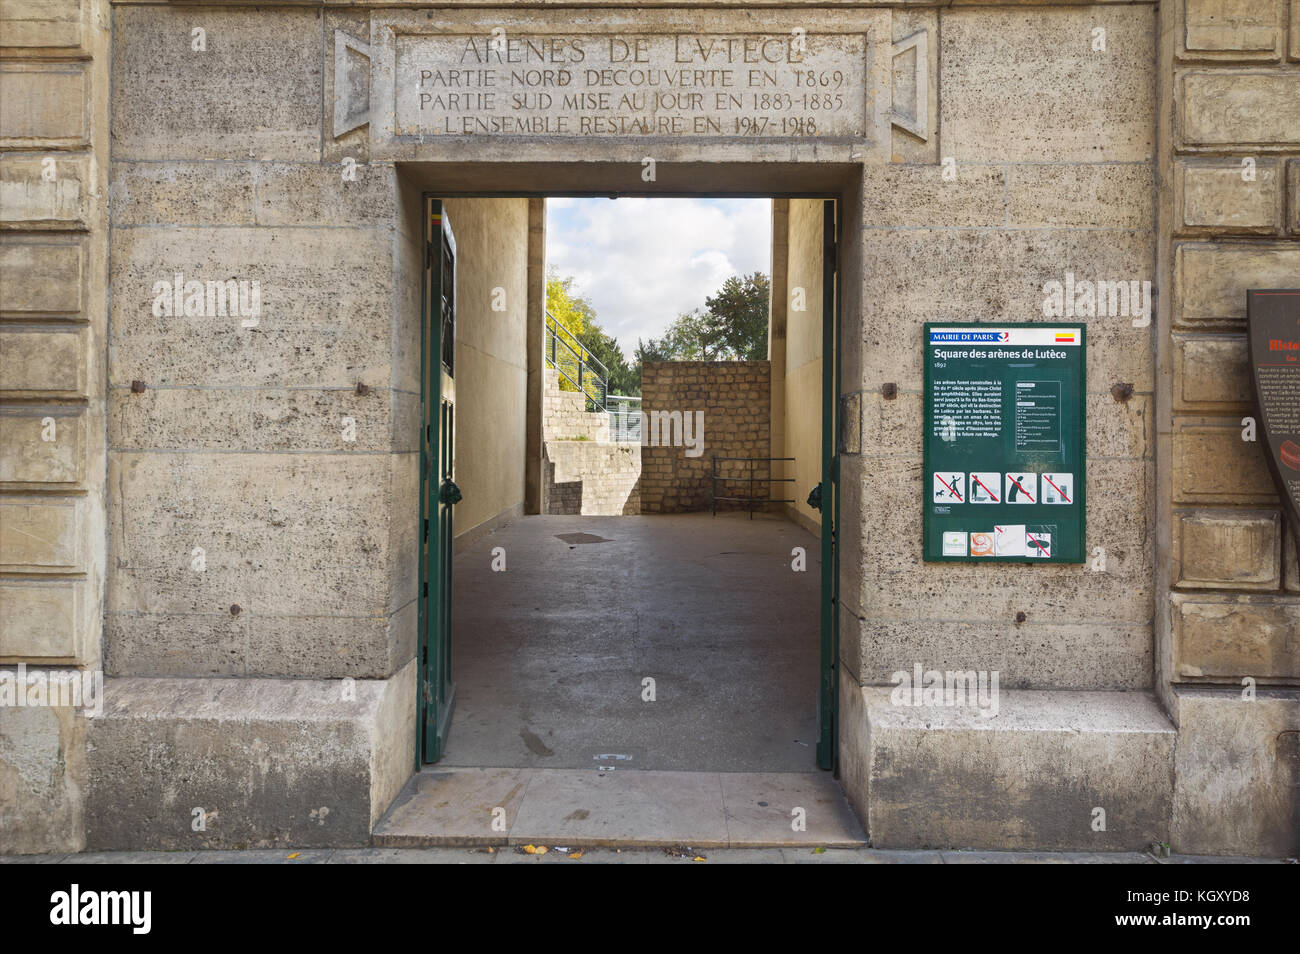 Les Arènes de Lutèce (1er siècle) - une arène romaine, l'un des plus vieux monument de Paris - Entrée principale Banque D'Images